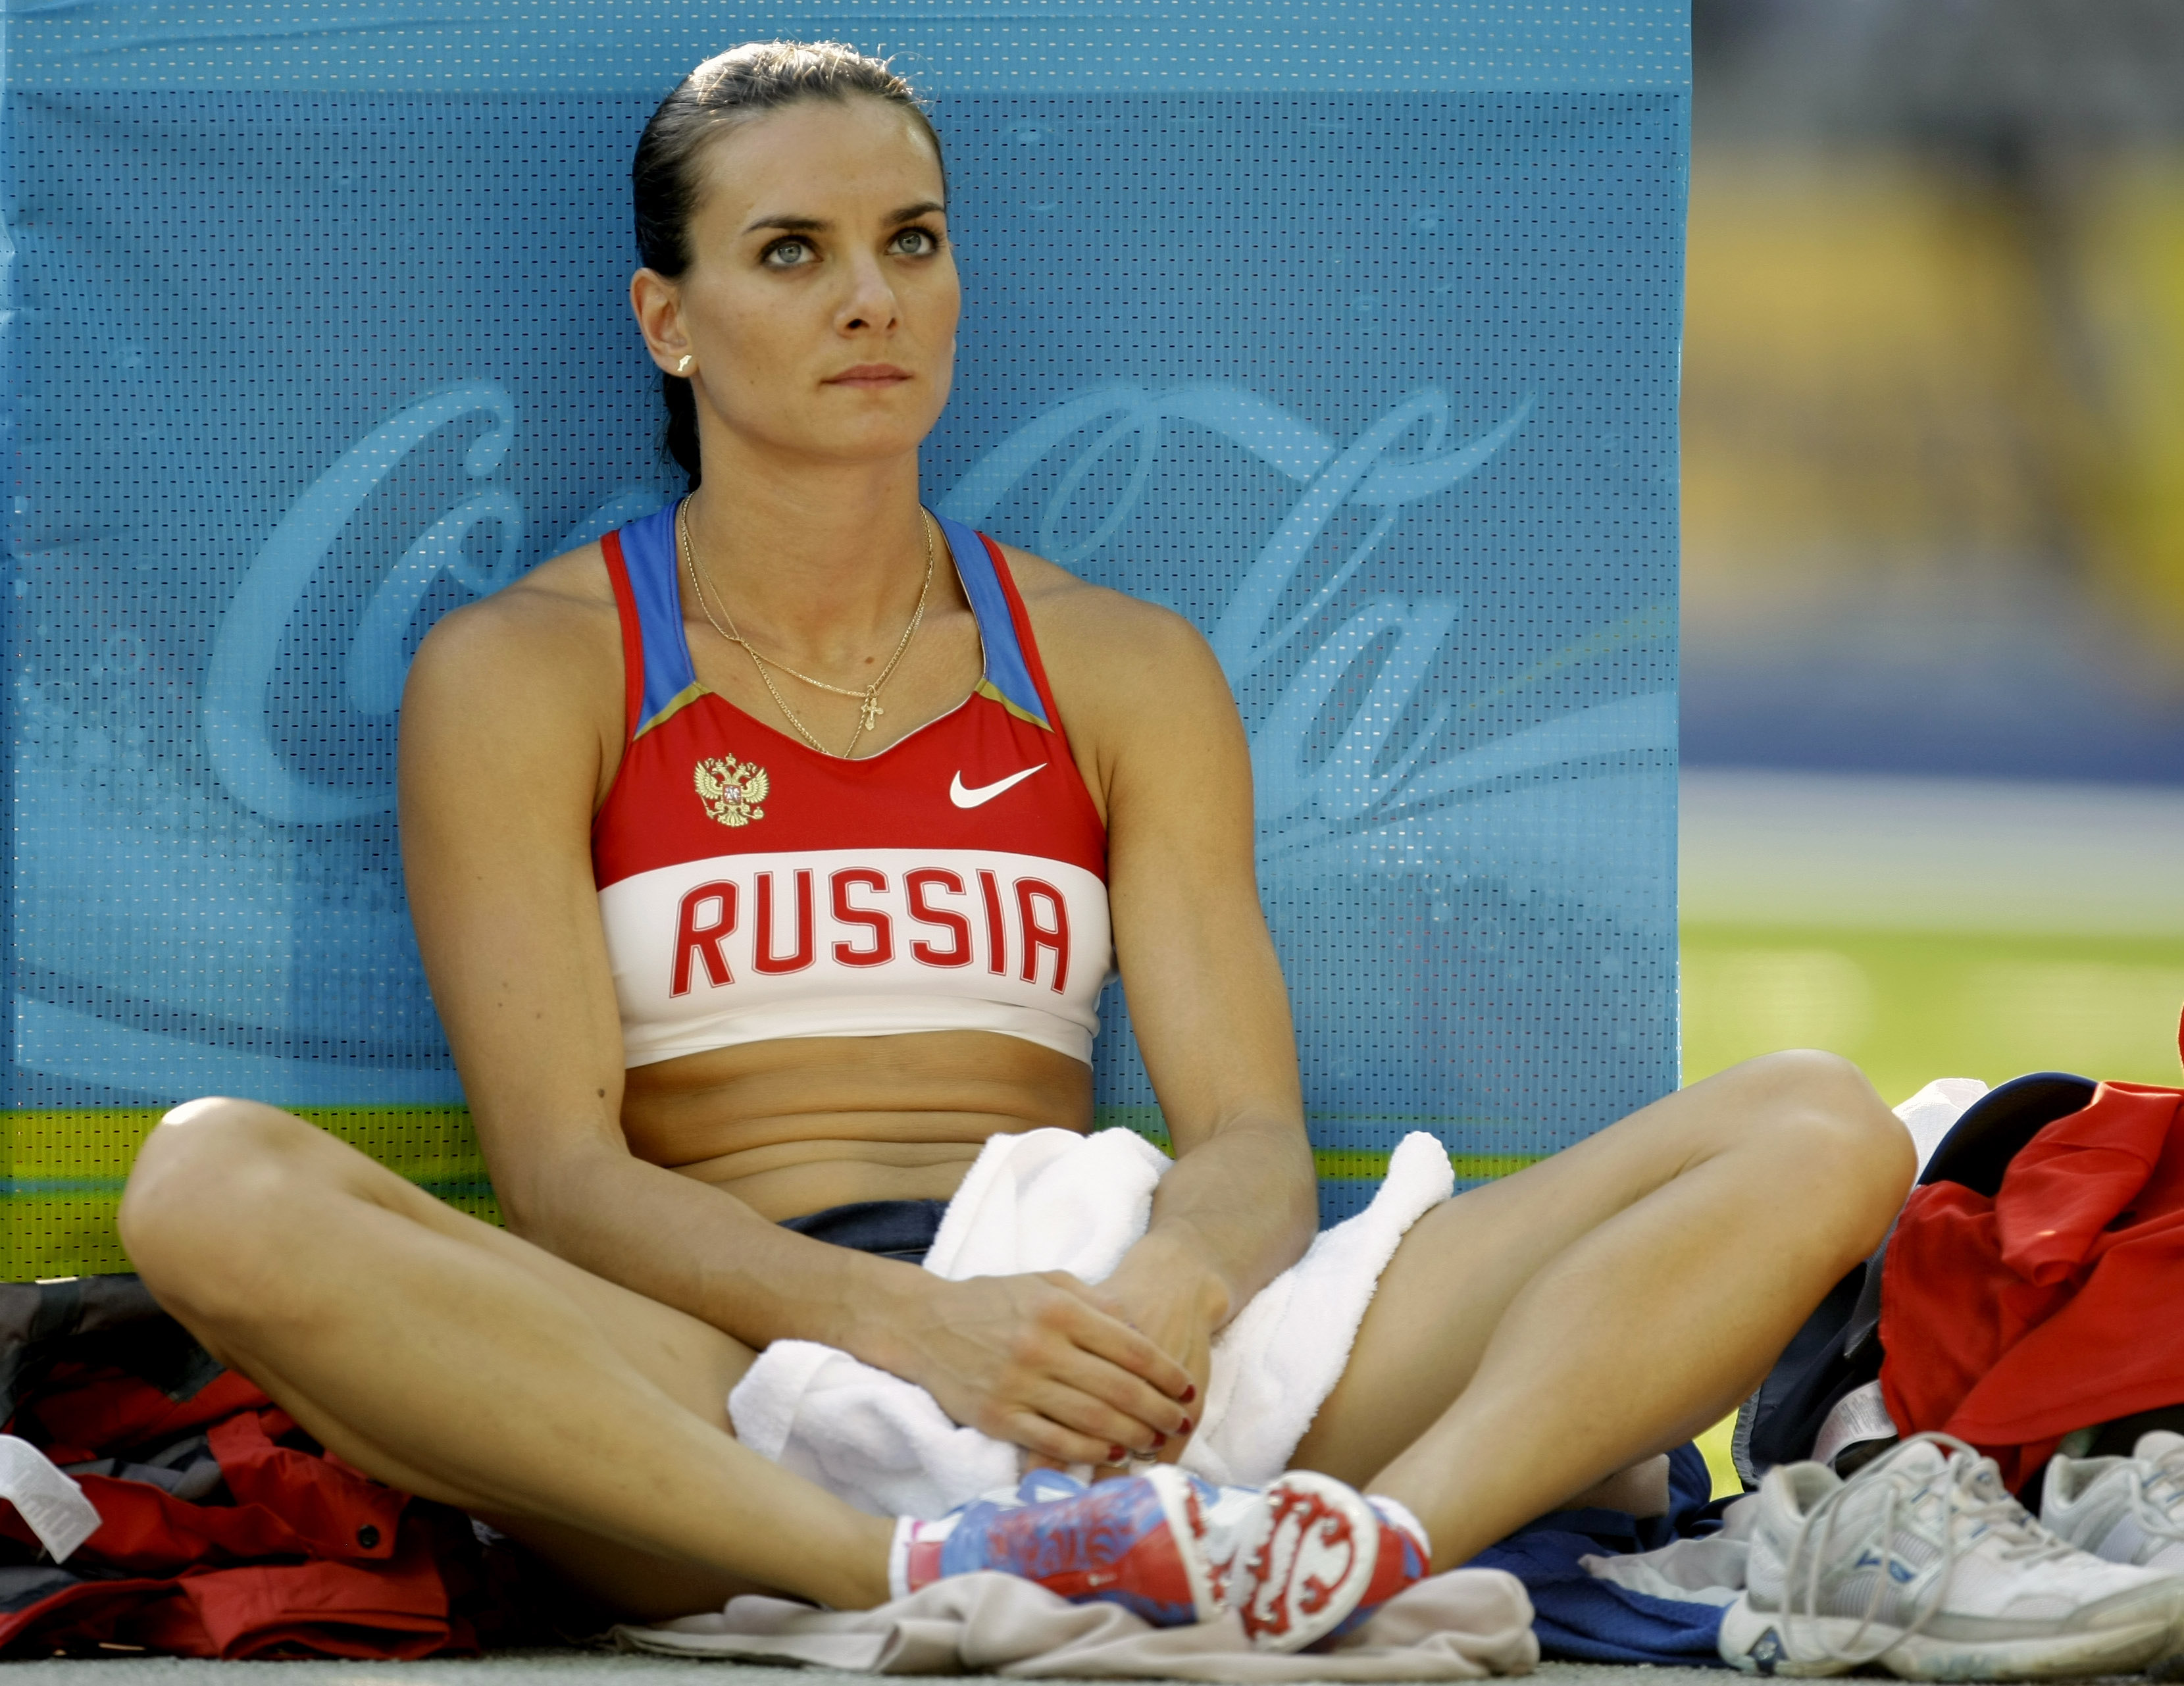 "Королева допинга" Исинбаева попрощалась с легкой атлетикой